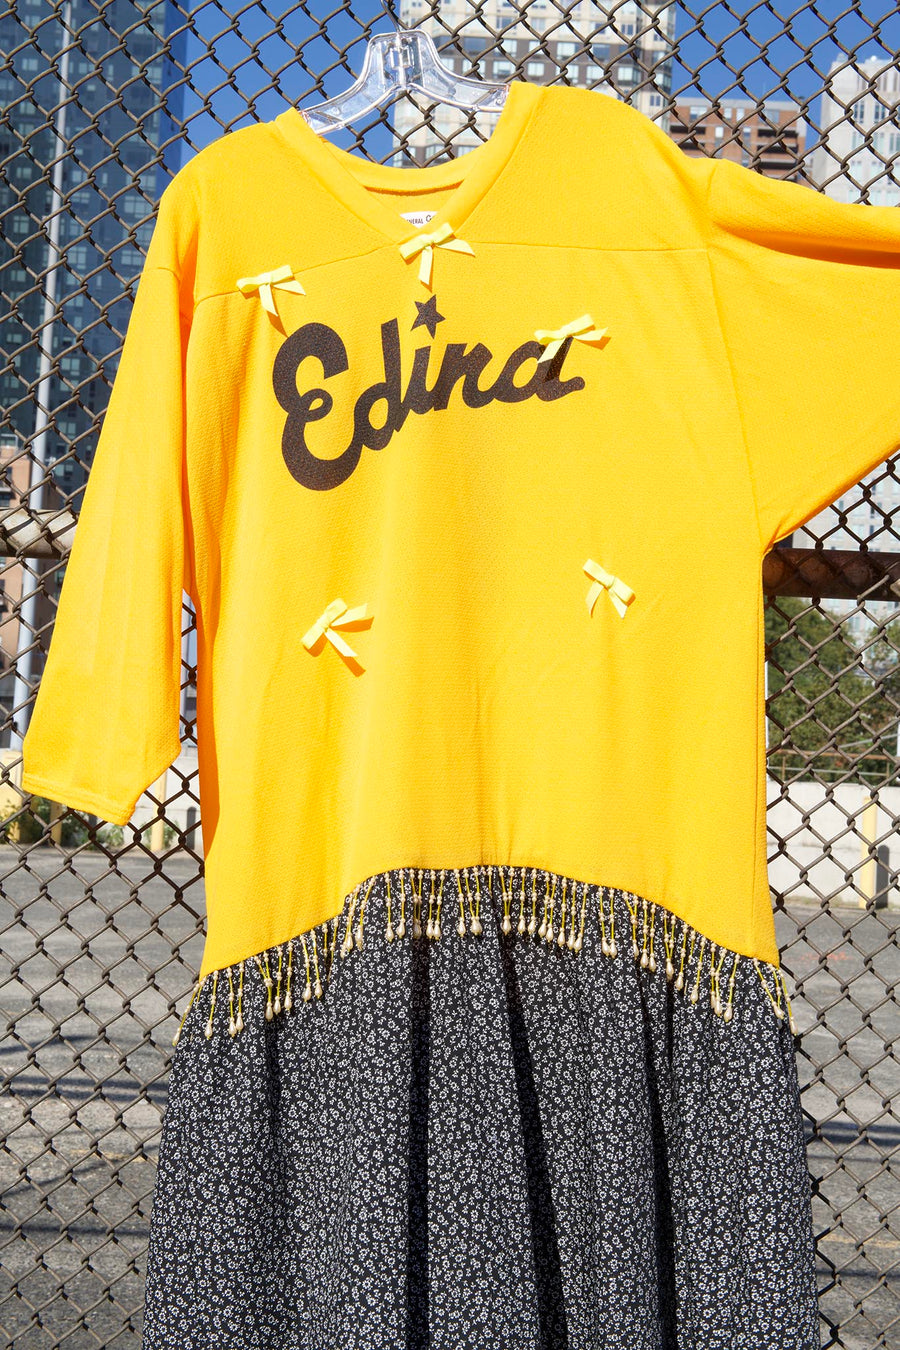 BATSHEVA - One-of-a-Kind Vintage Edina Jersey Dress